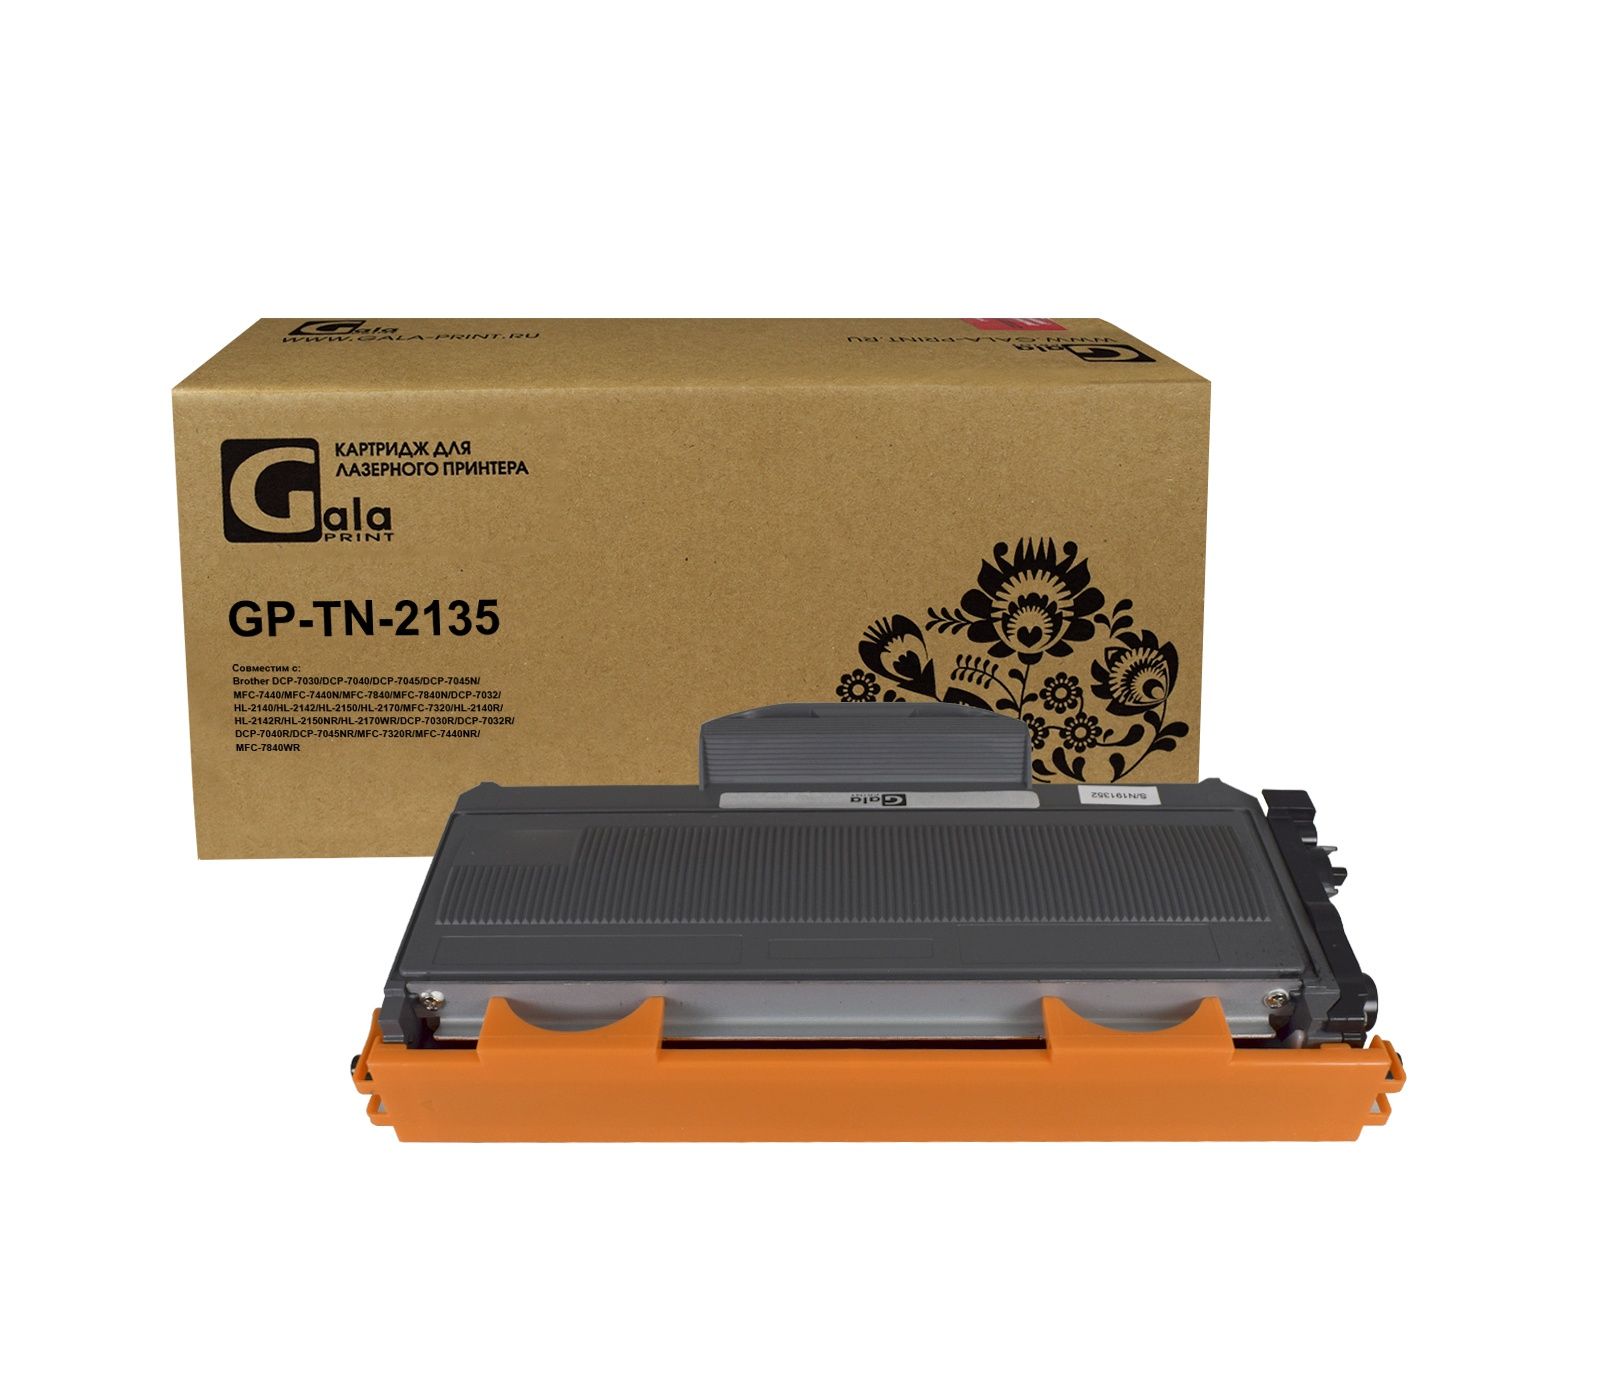 Картридж GP-TN-2135 для принтеров Brother 1500 копий GalaPrint